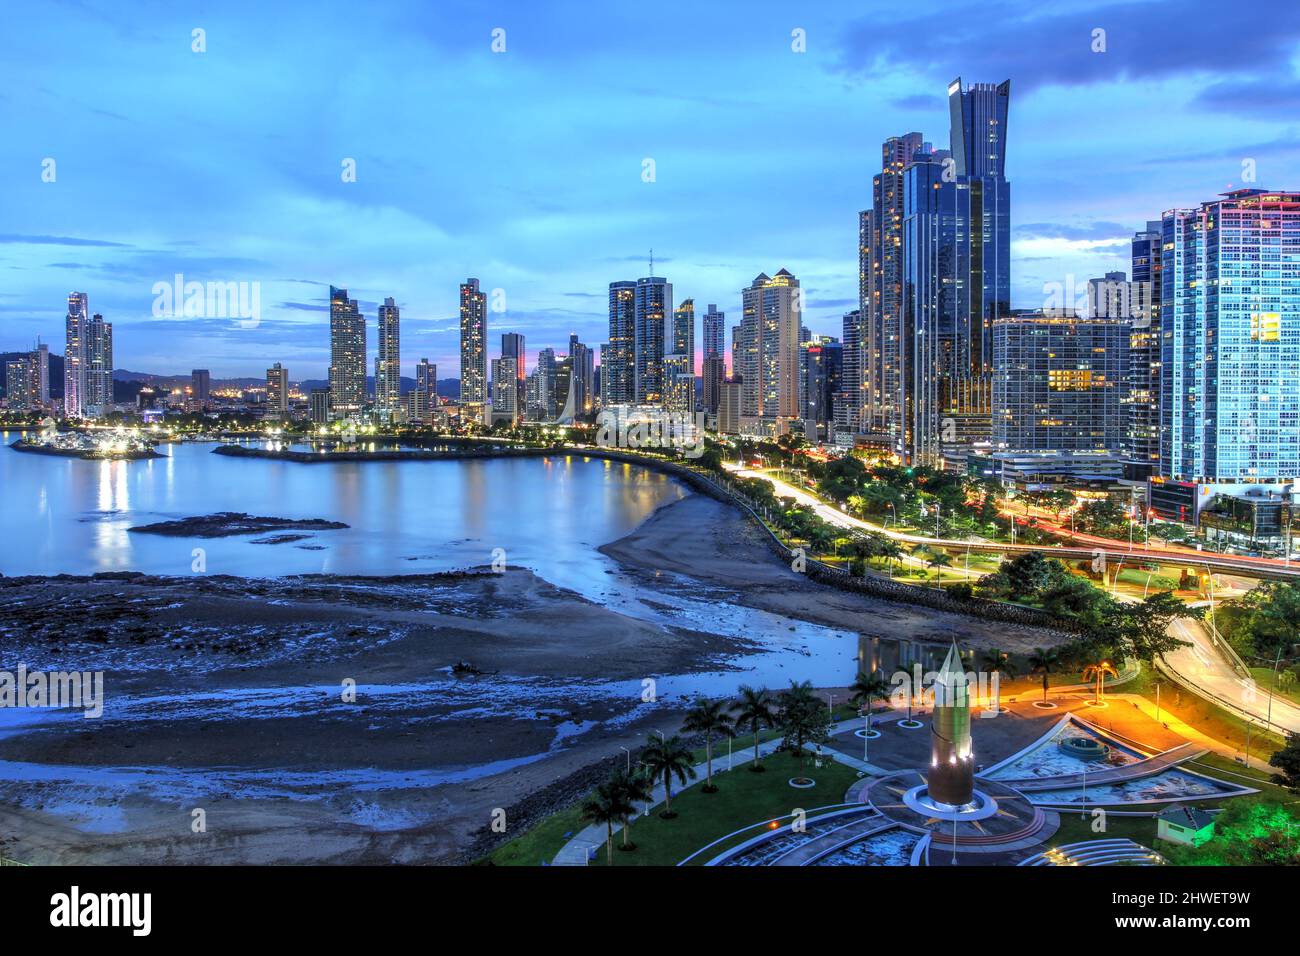 Vue sur le front de mer de la ville de Panama, vue depuis Punta Paitilla le long de la Cinta Costera au crépuscule Banque D'Images